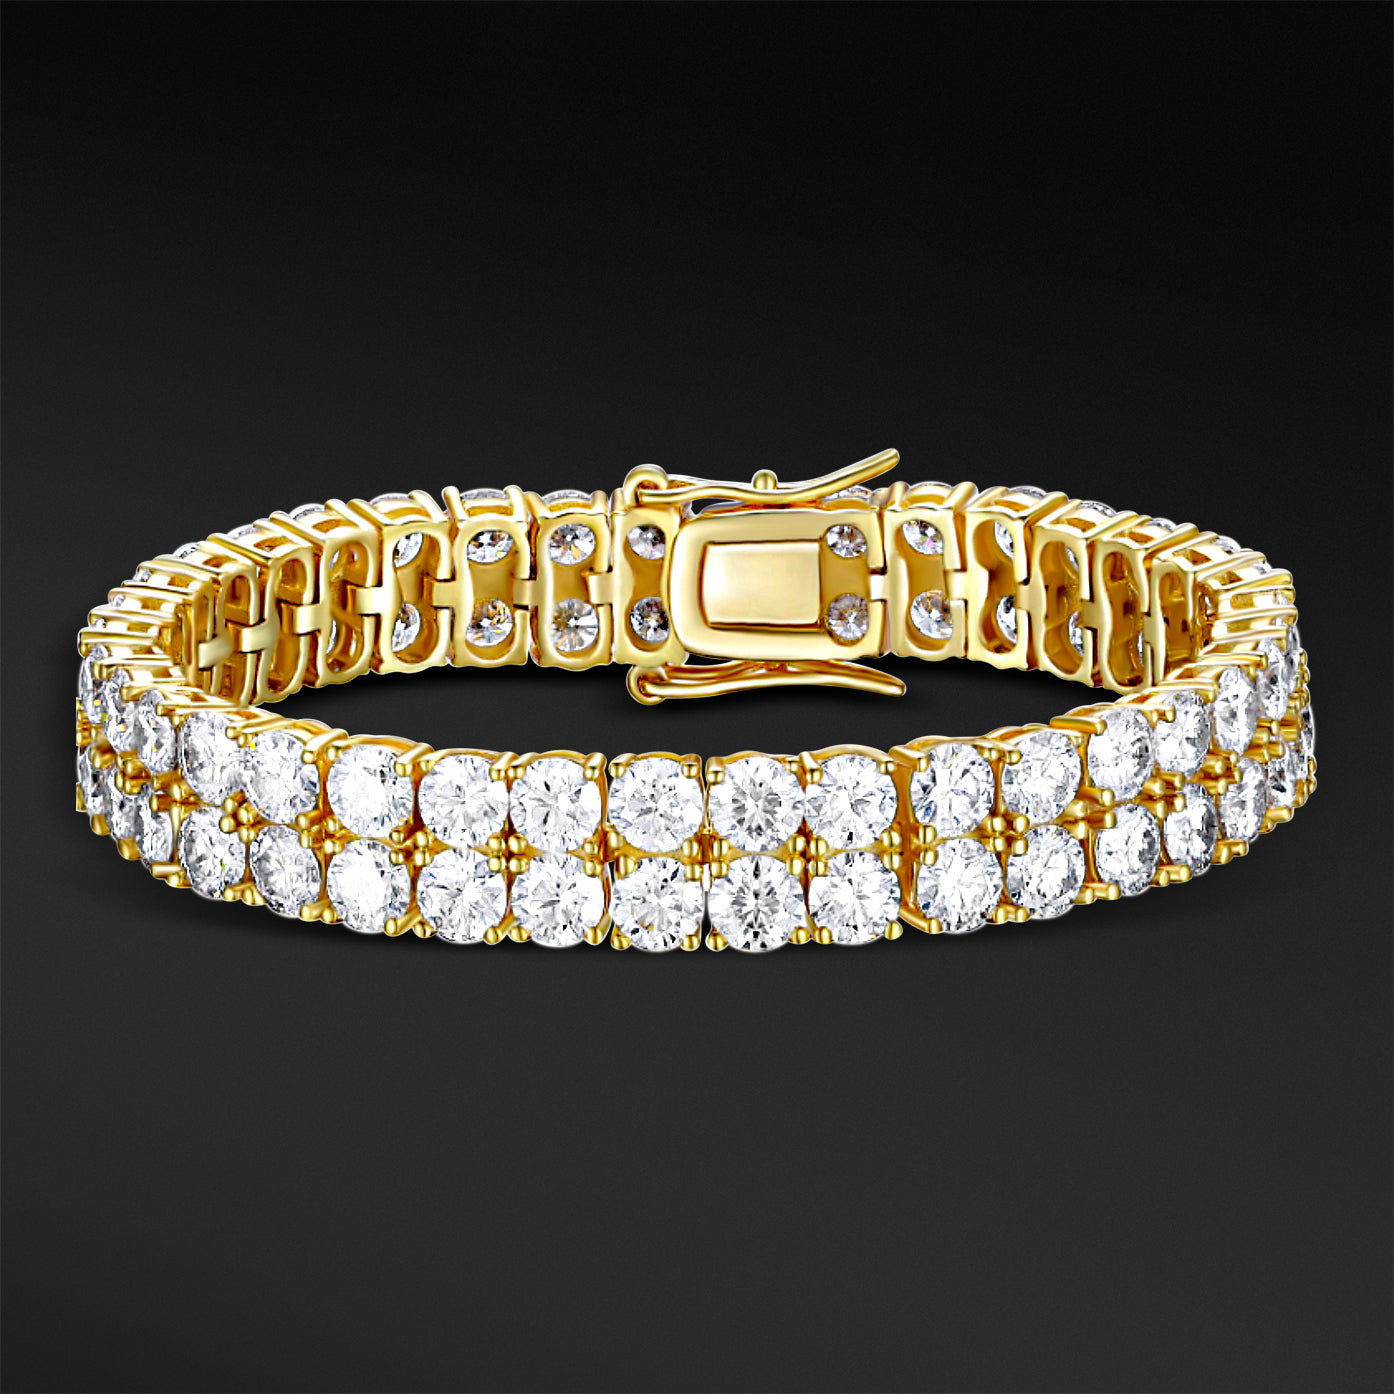 MOISSANITE DIAMOND CLUSTER TENNIS BRACELET - GOLD